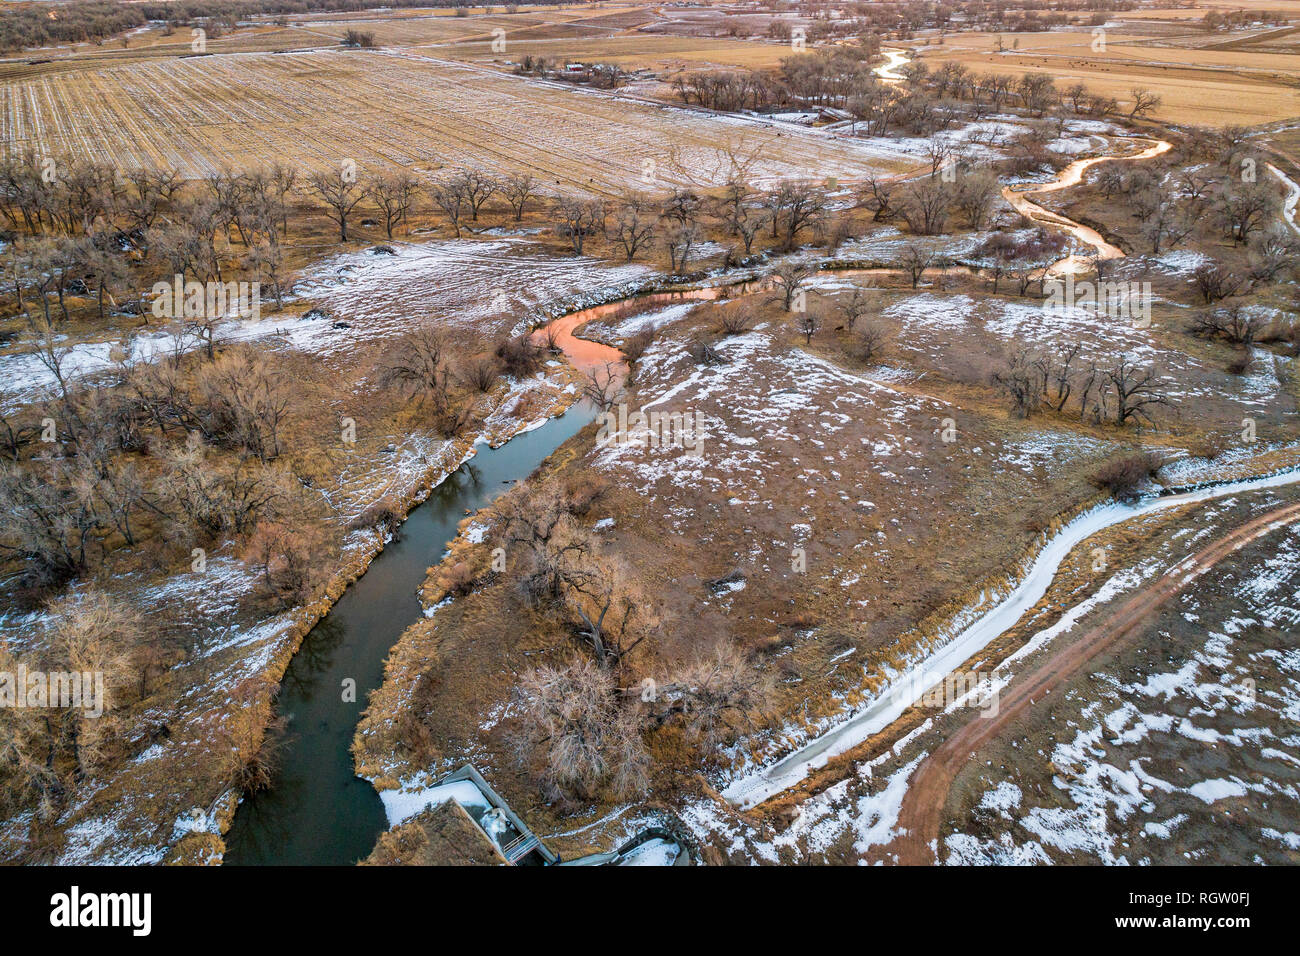 Les terres agricoles de l'est du Colorado et Big Thompson River au-dessus de son confluent avec la rivière South Platte, crépuscule d'hiver ar vue aérienne Banque D'Images